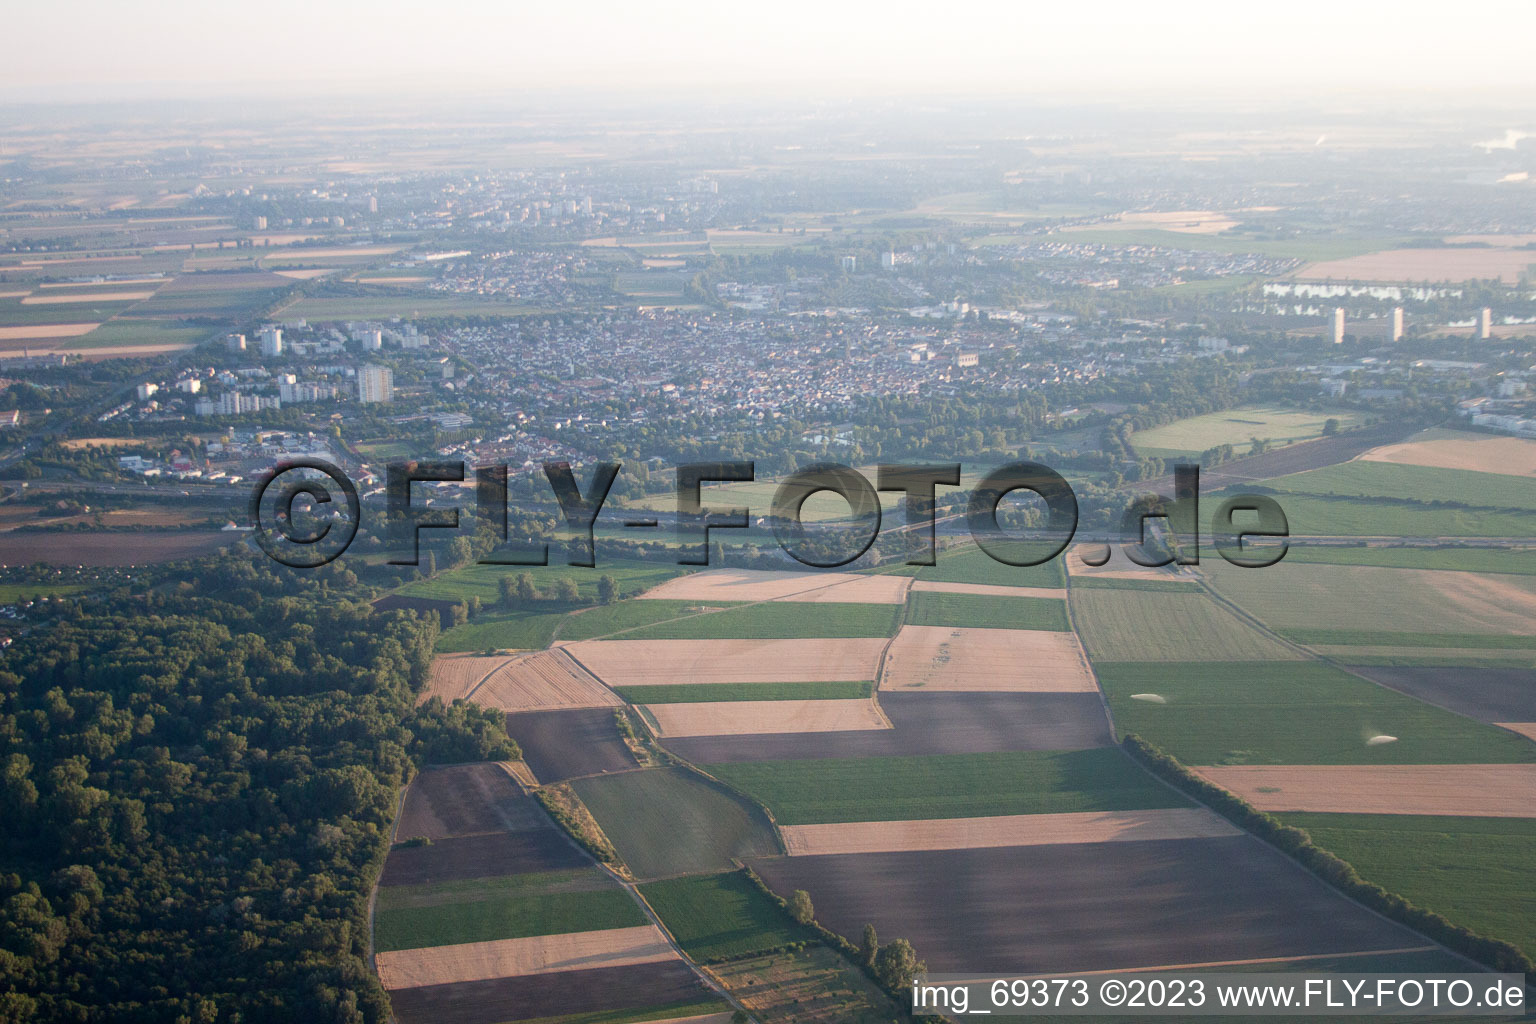 Ortsteil Oggersheim in Ludwigshafen am Rhein im Bundesland Rheinland-Pfalz, Deutschland von der Drohne aus gesehen